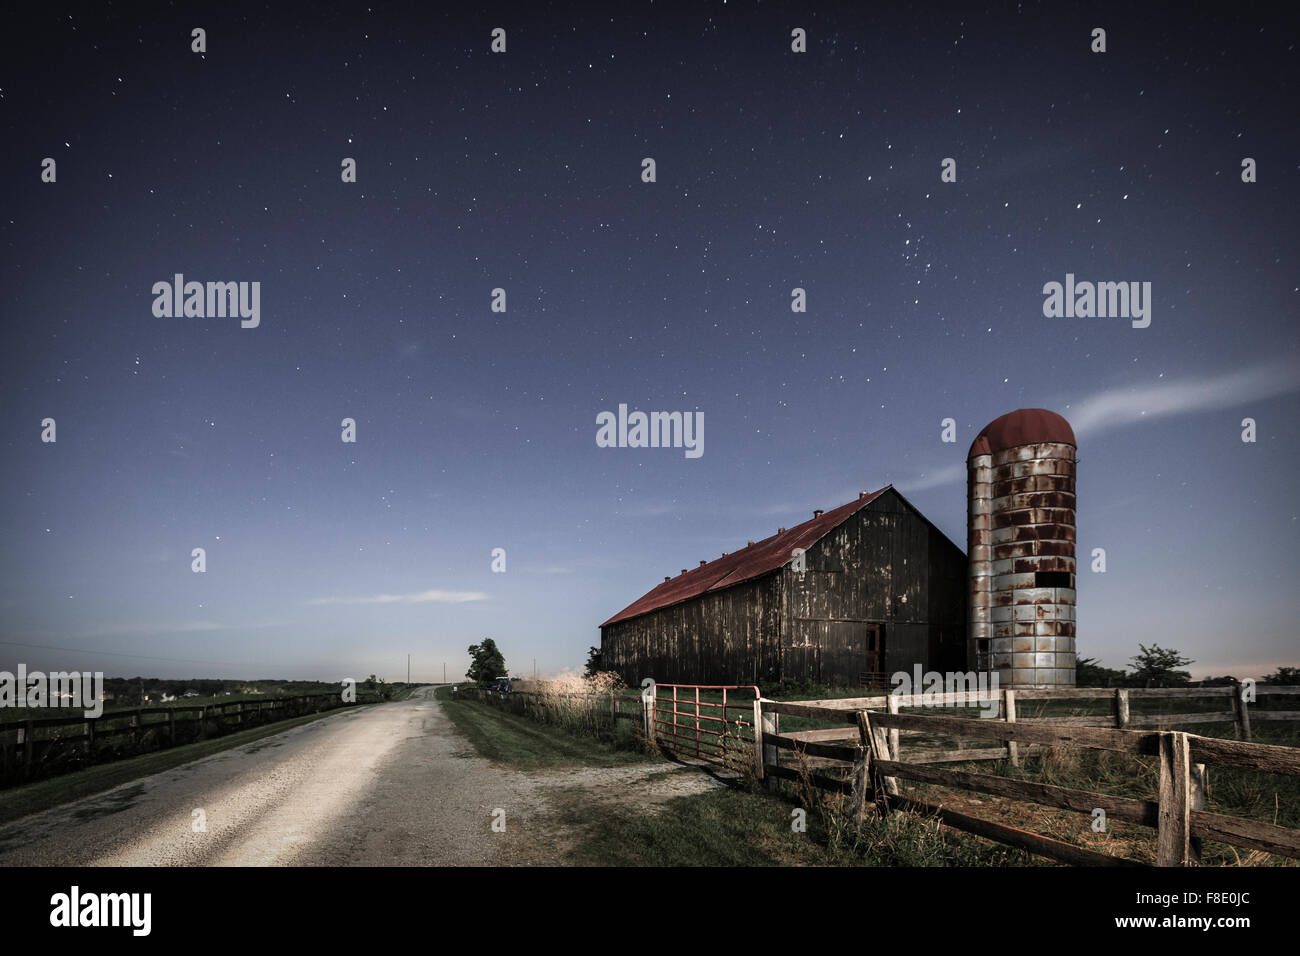 Malerische nächtliche Bild von einer alten Bauernhof Scheune und einer Landstraße im Mondschein Stockfoto